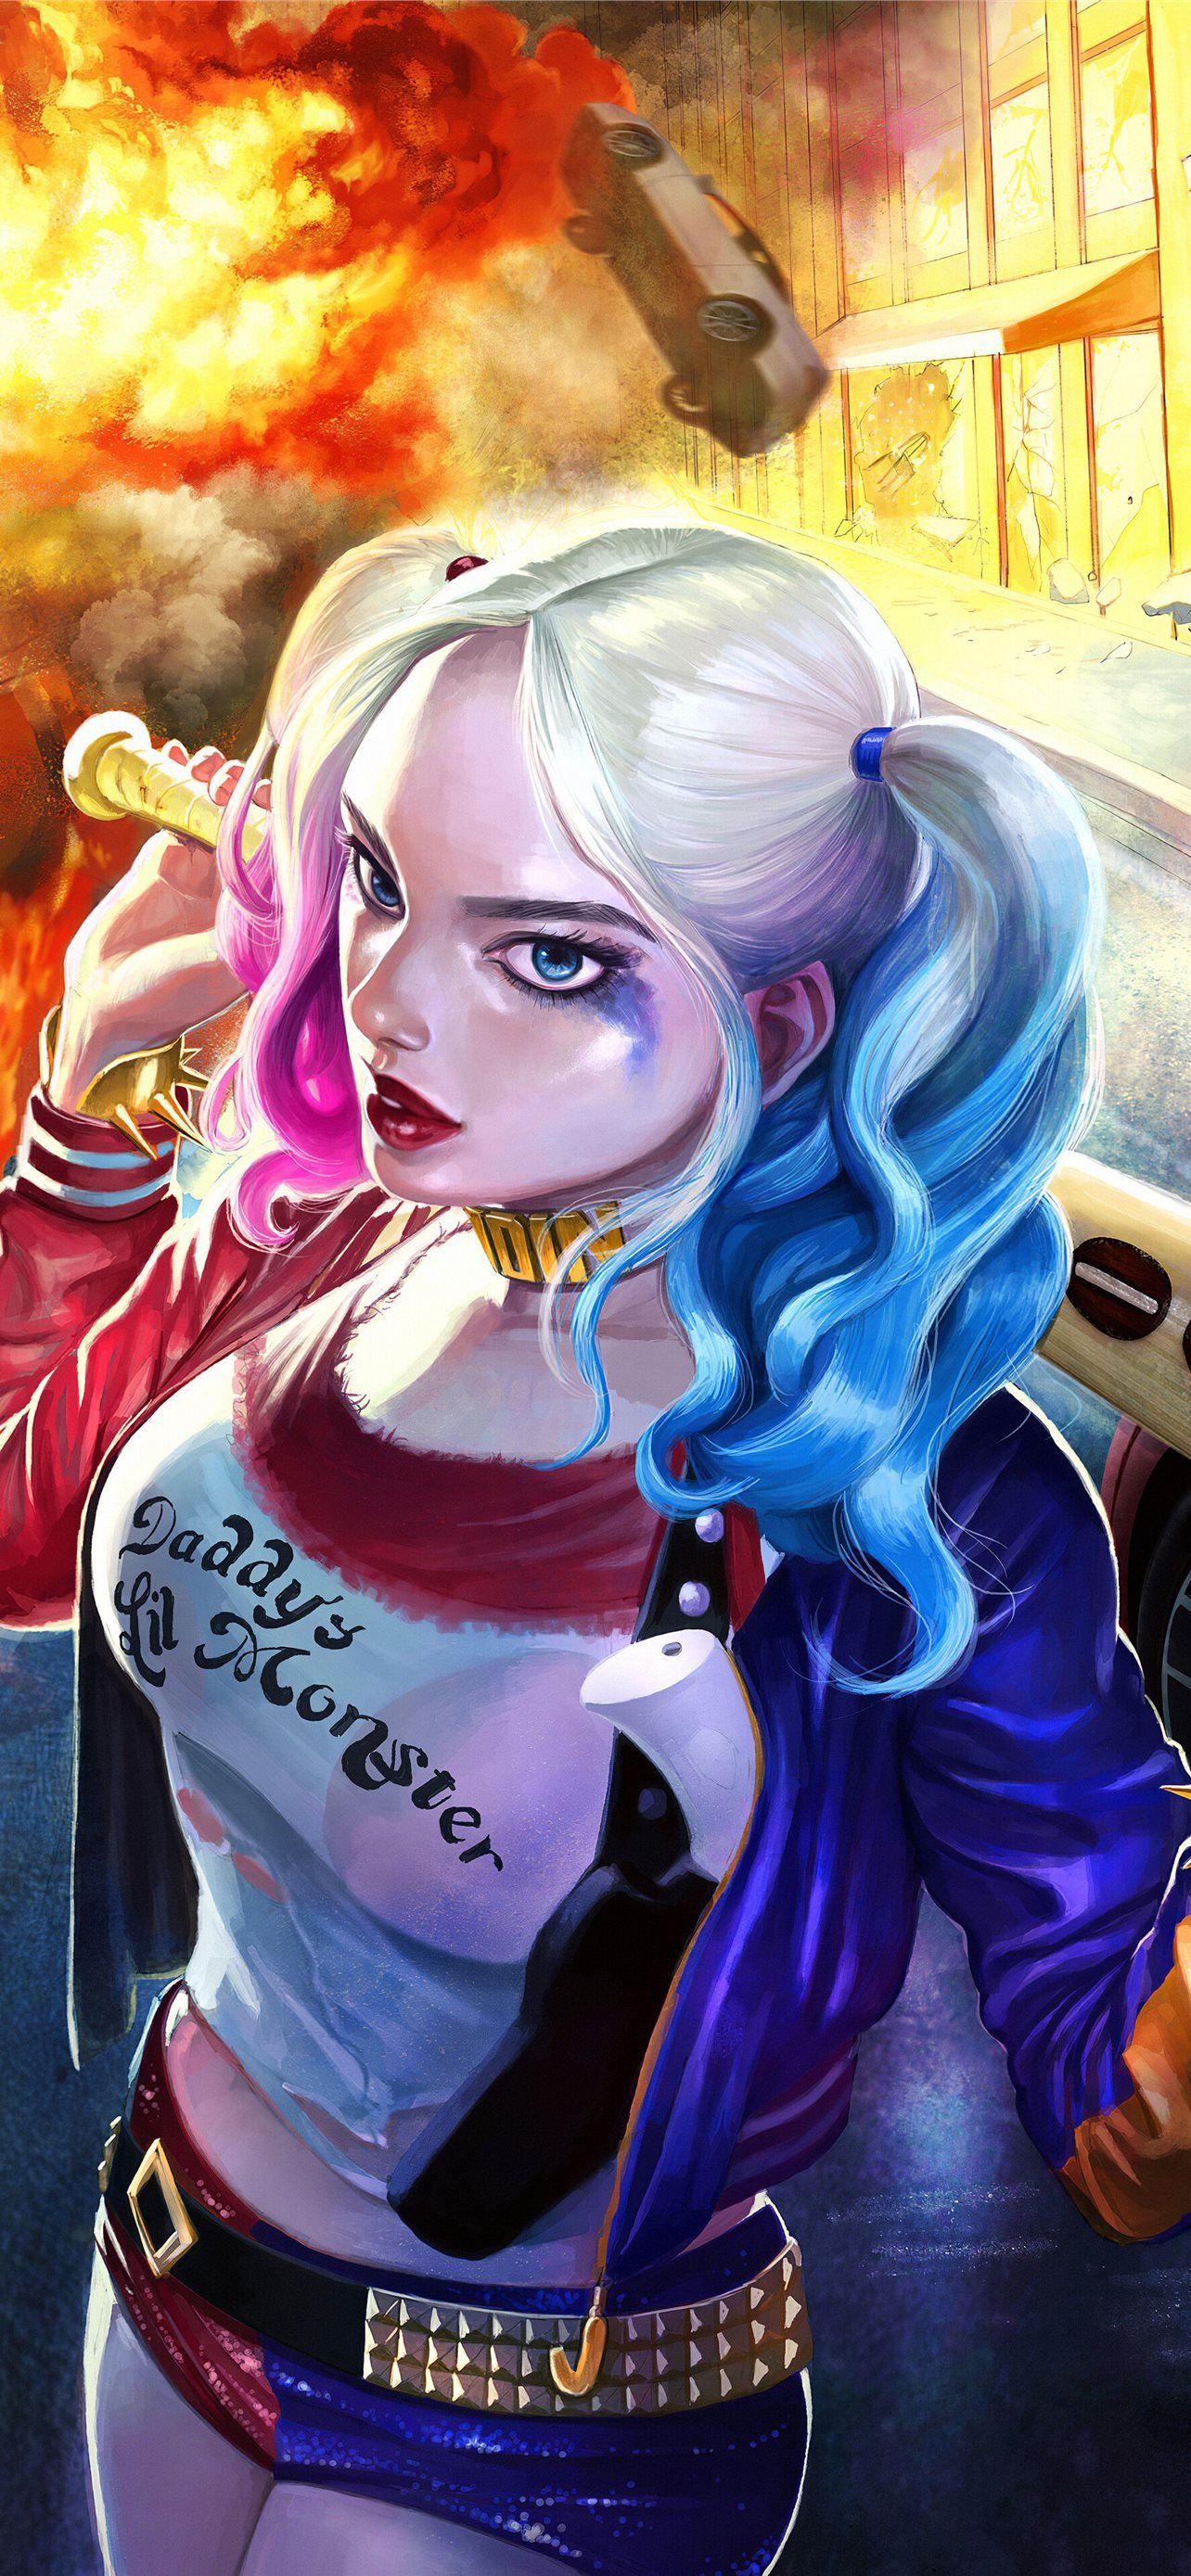 Anime Joker And Harley Quinn Wallpapers